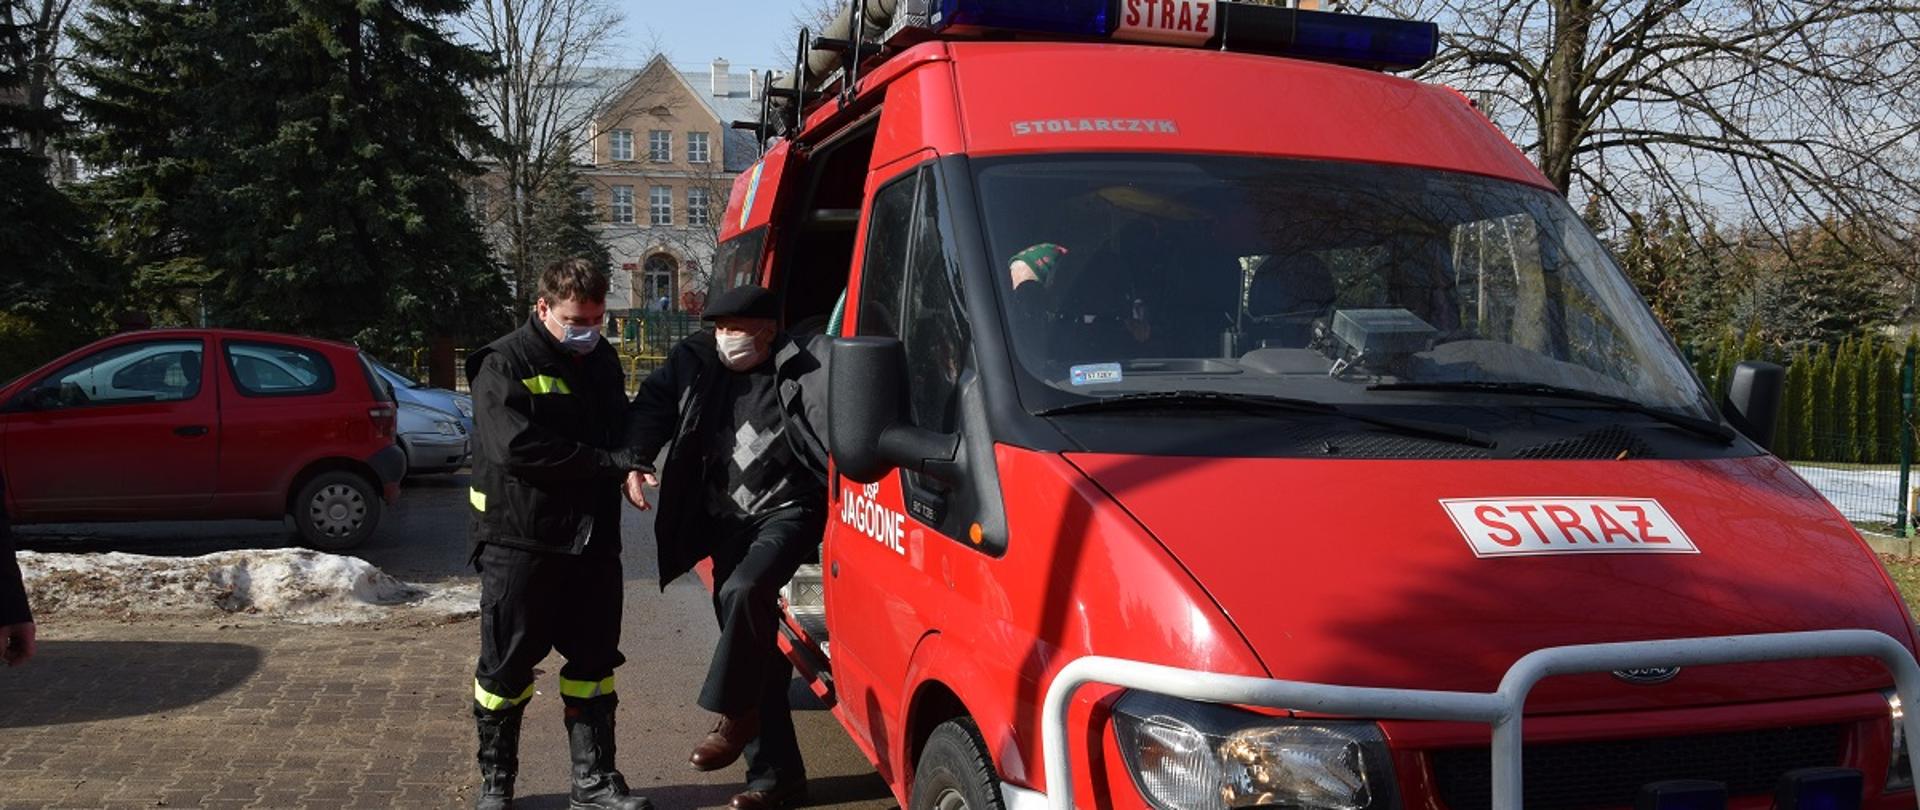 Strażak pomaga wysiąść z pojazdu pożarniczego starszemu mężczyźnie